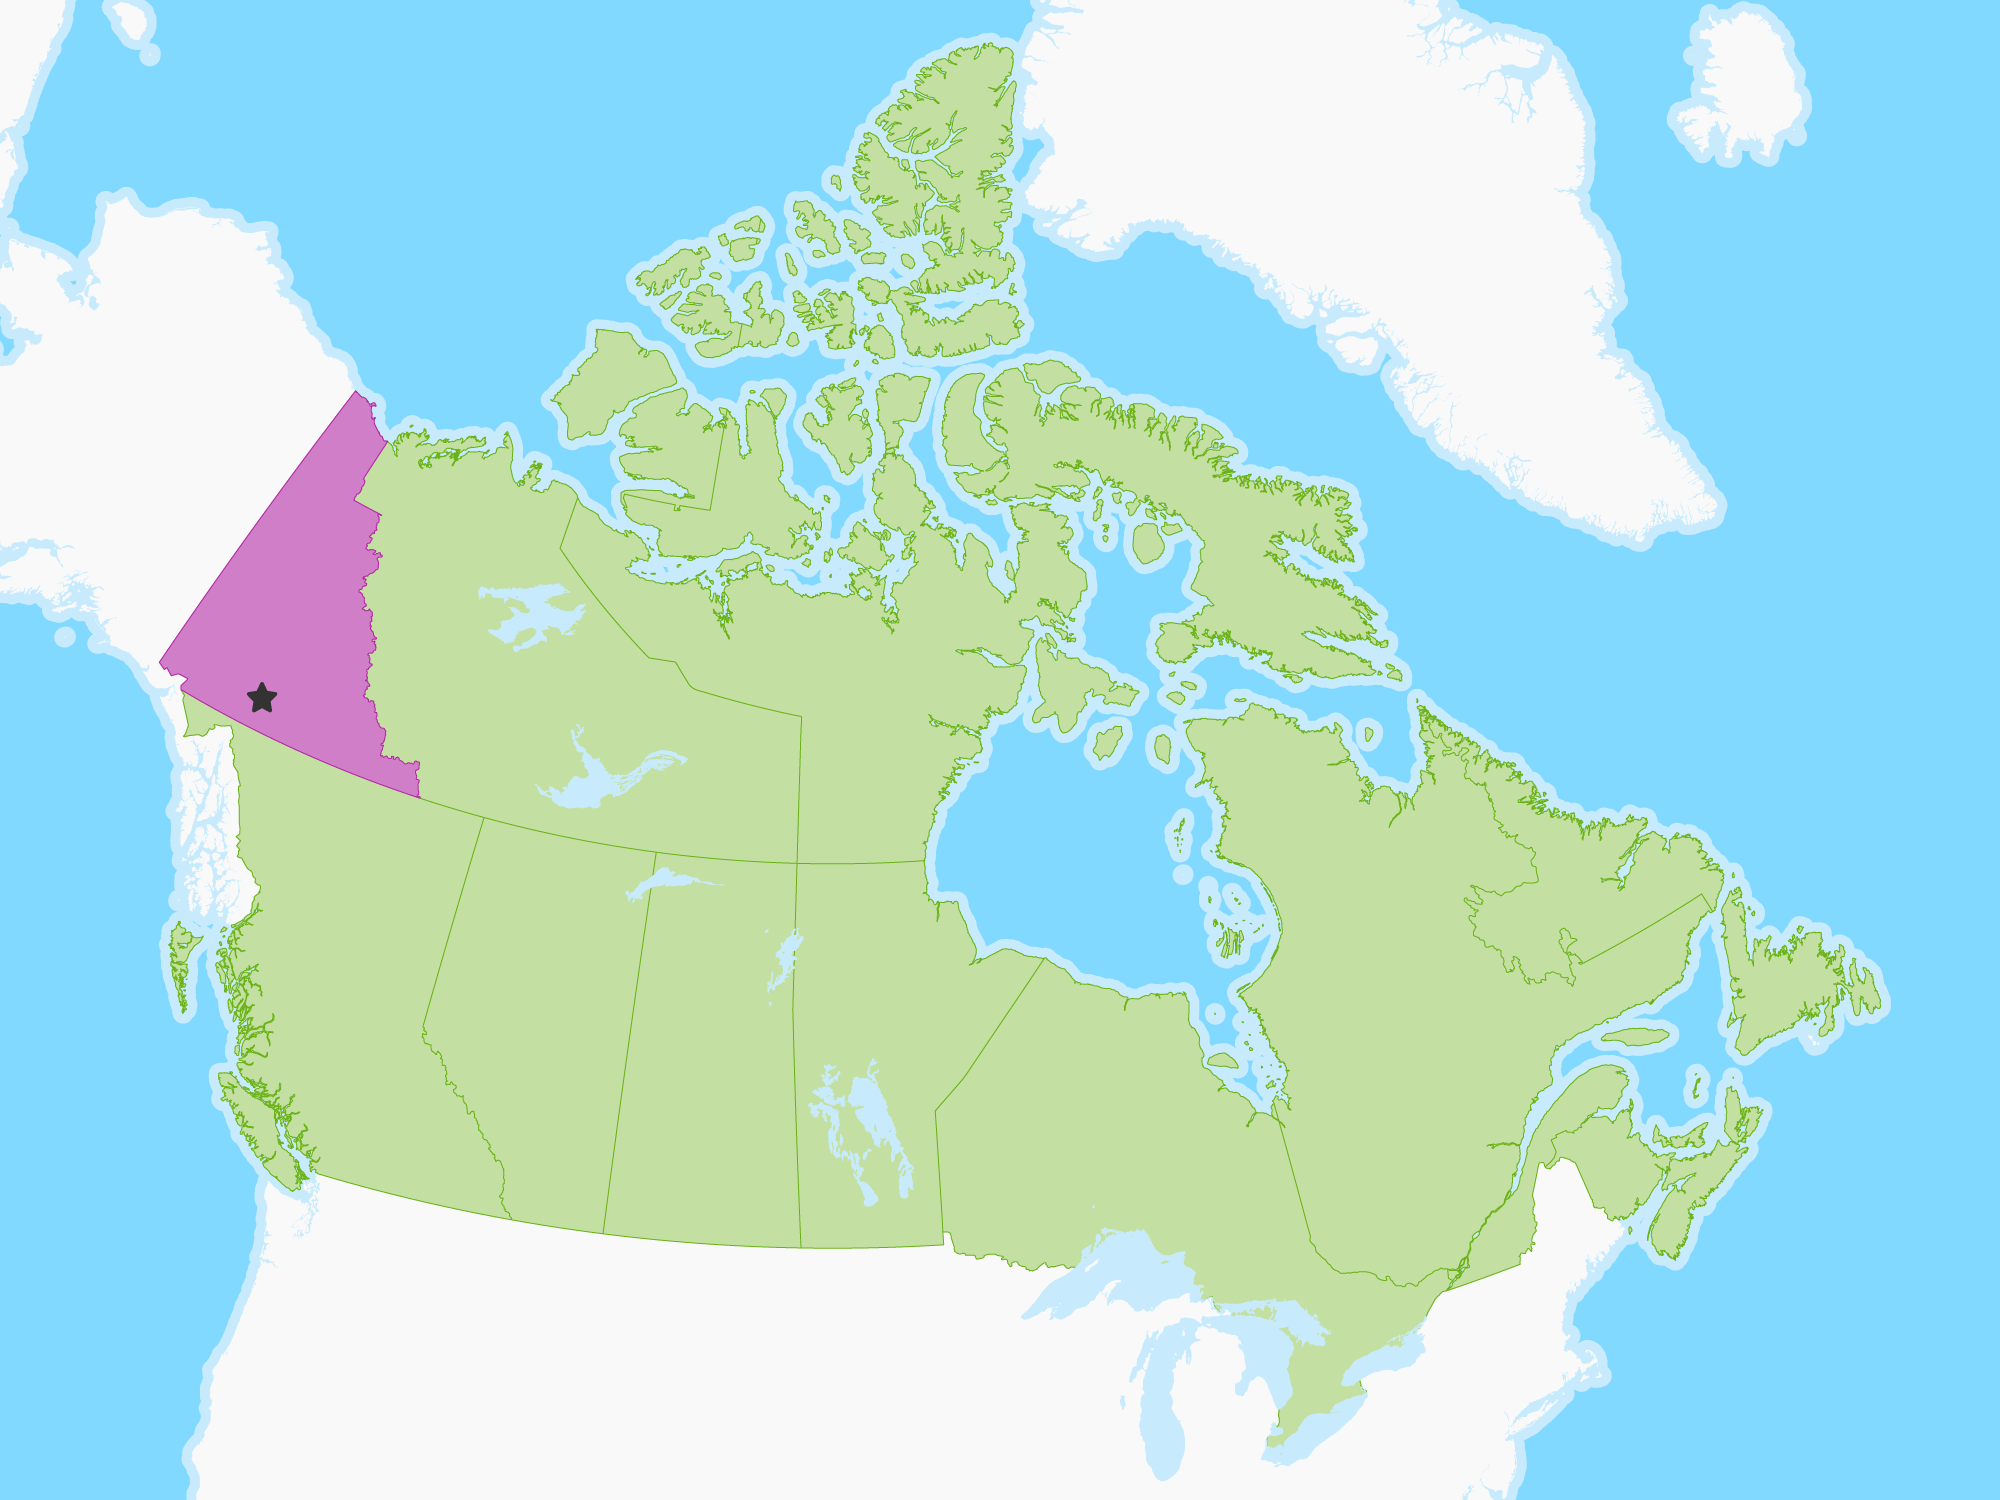 Map of Yukon